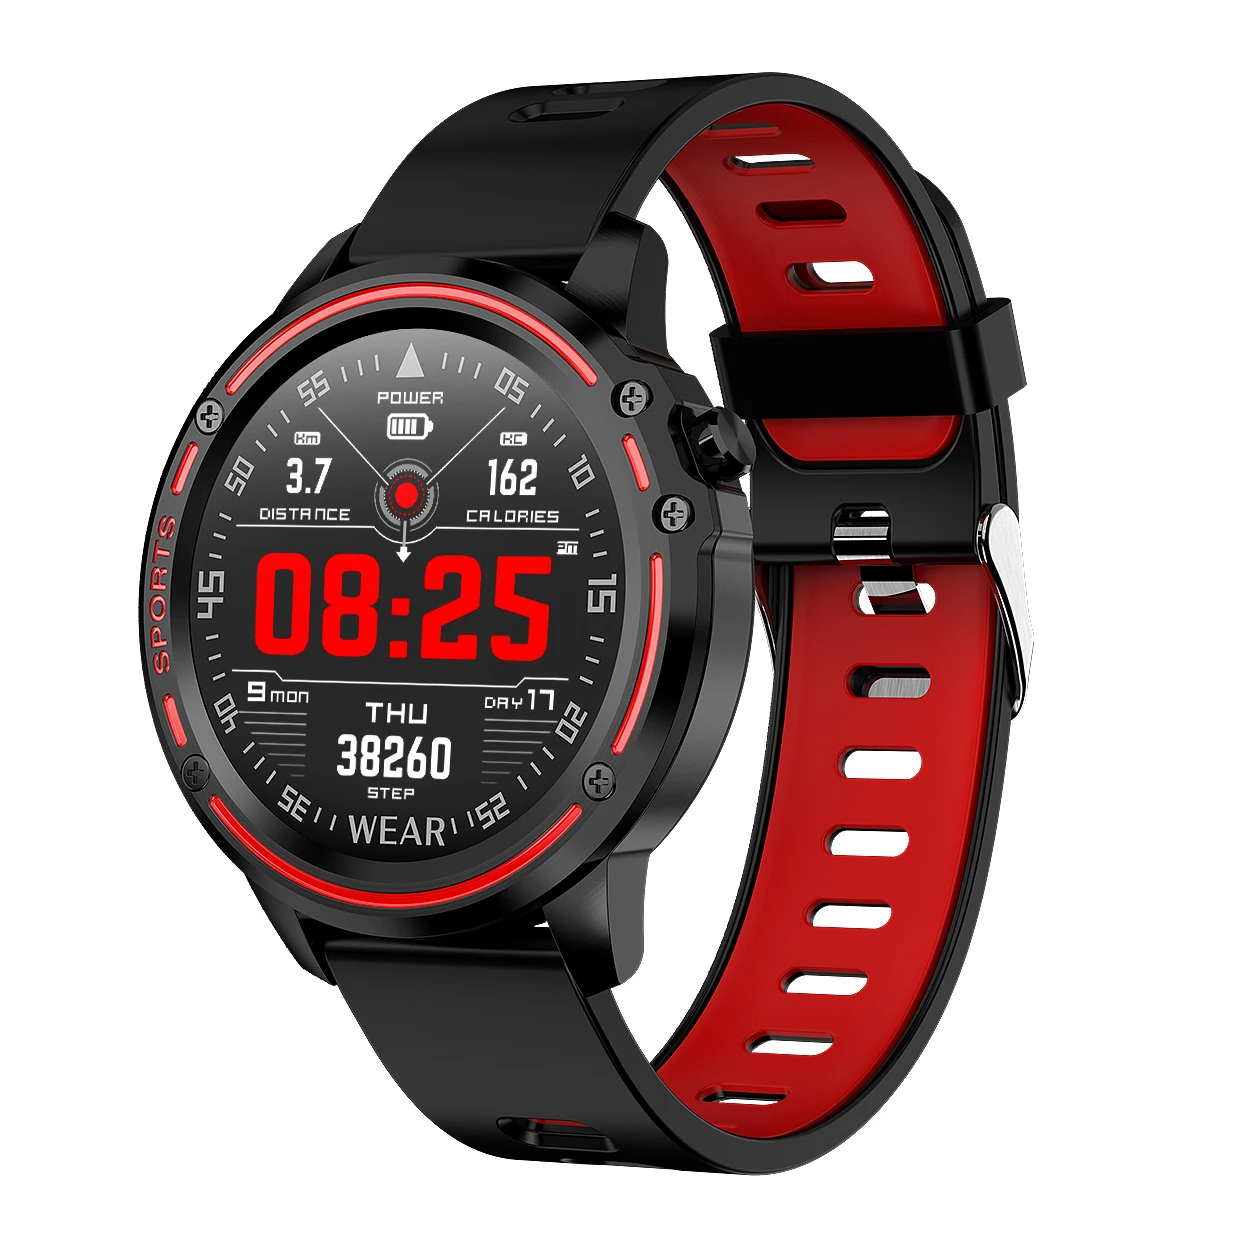 

2020 L8 P3 New 5G Bluetooth Payment Card NFC Watch bip amazfit microwear smart watch camera samart watch sport smart watch